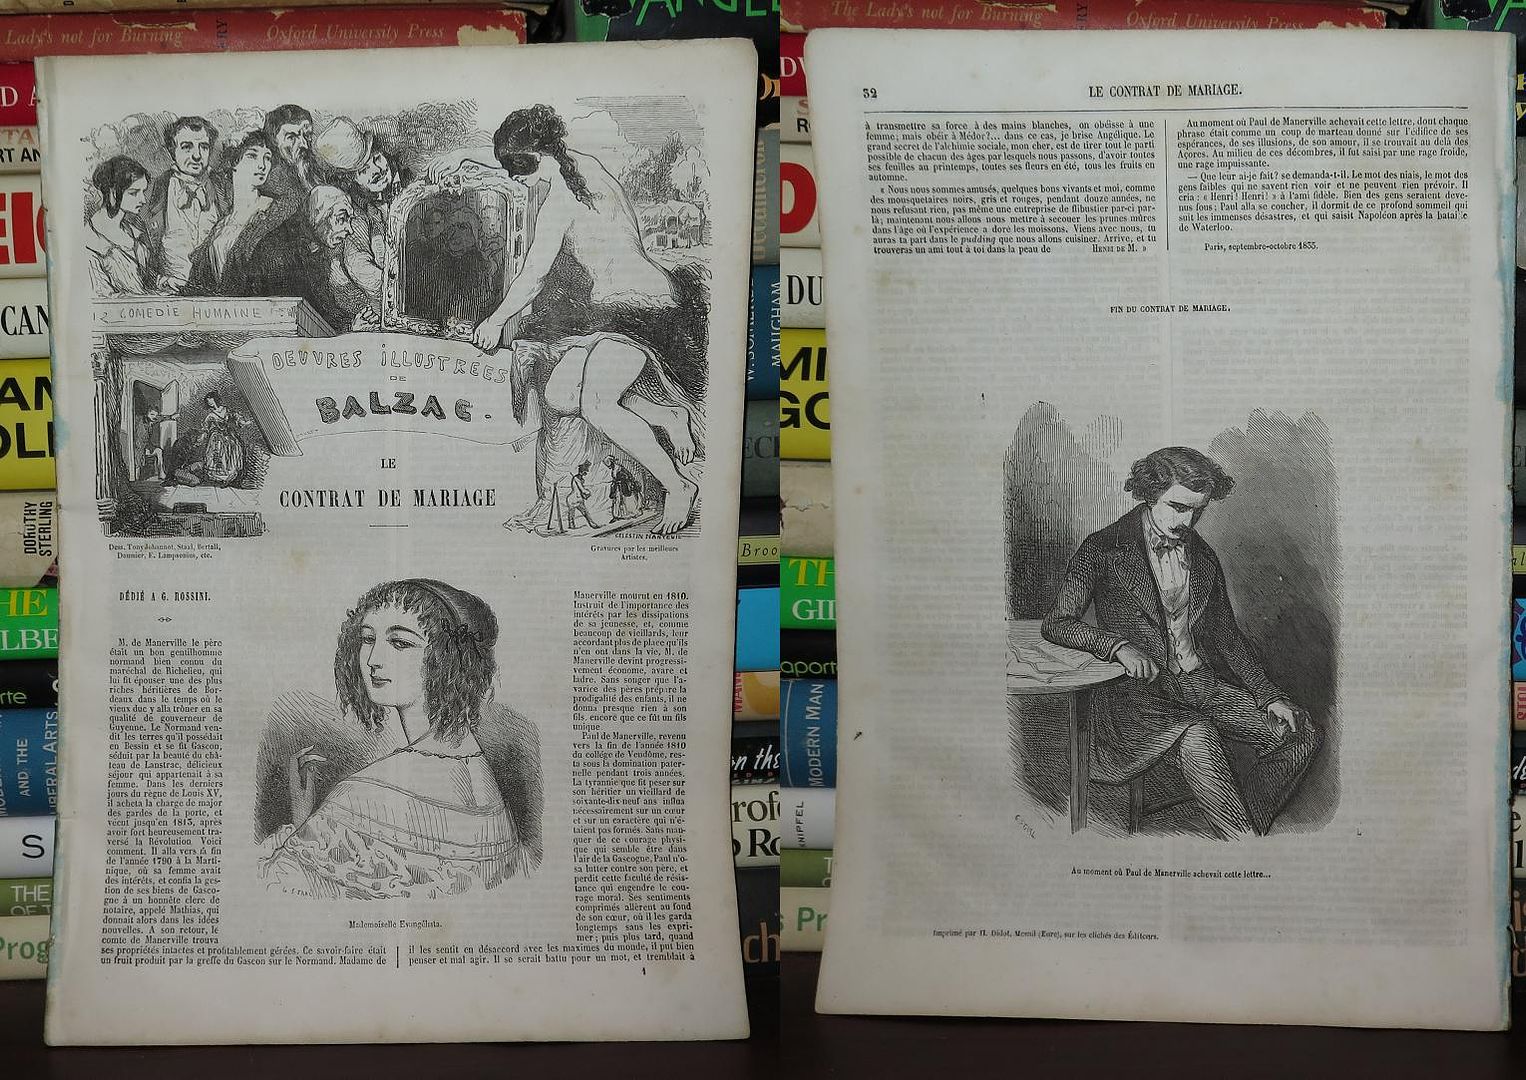 BALZAC, HONOR DE - Le Contrat de Mariage la Comedie Humaine, Oeuvres Illustrees de Balzac